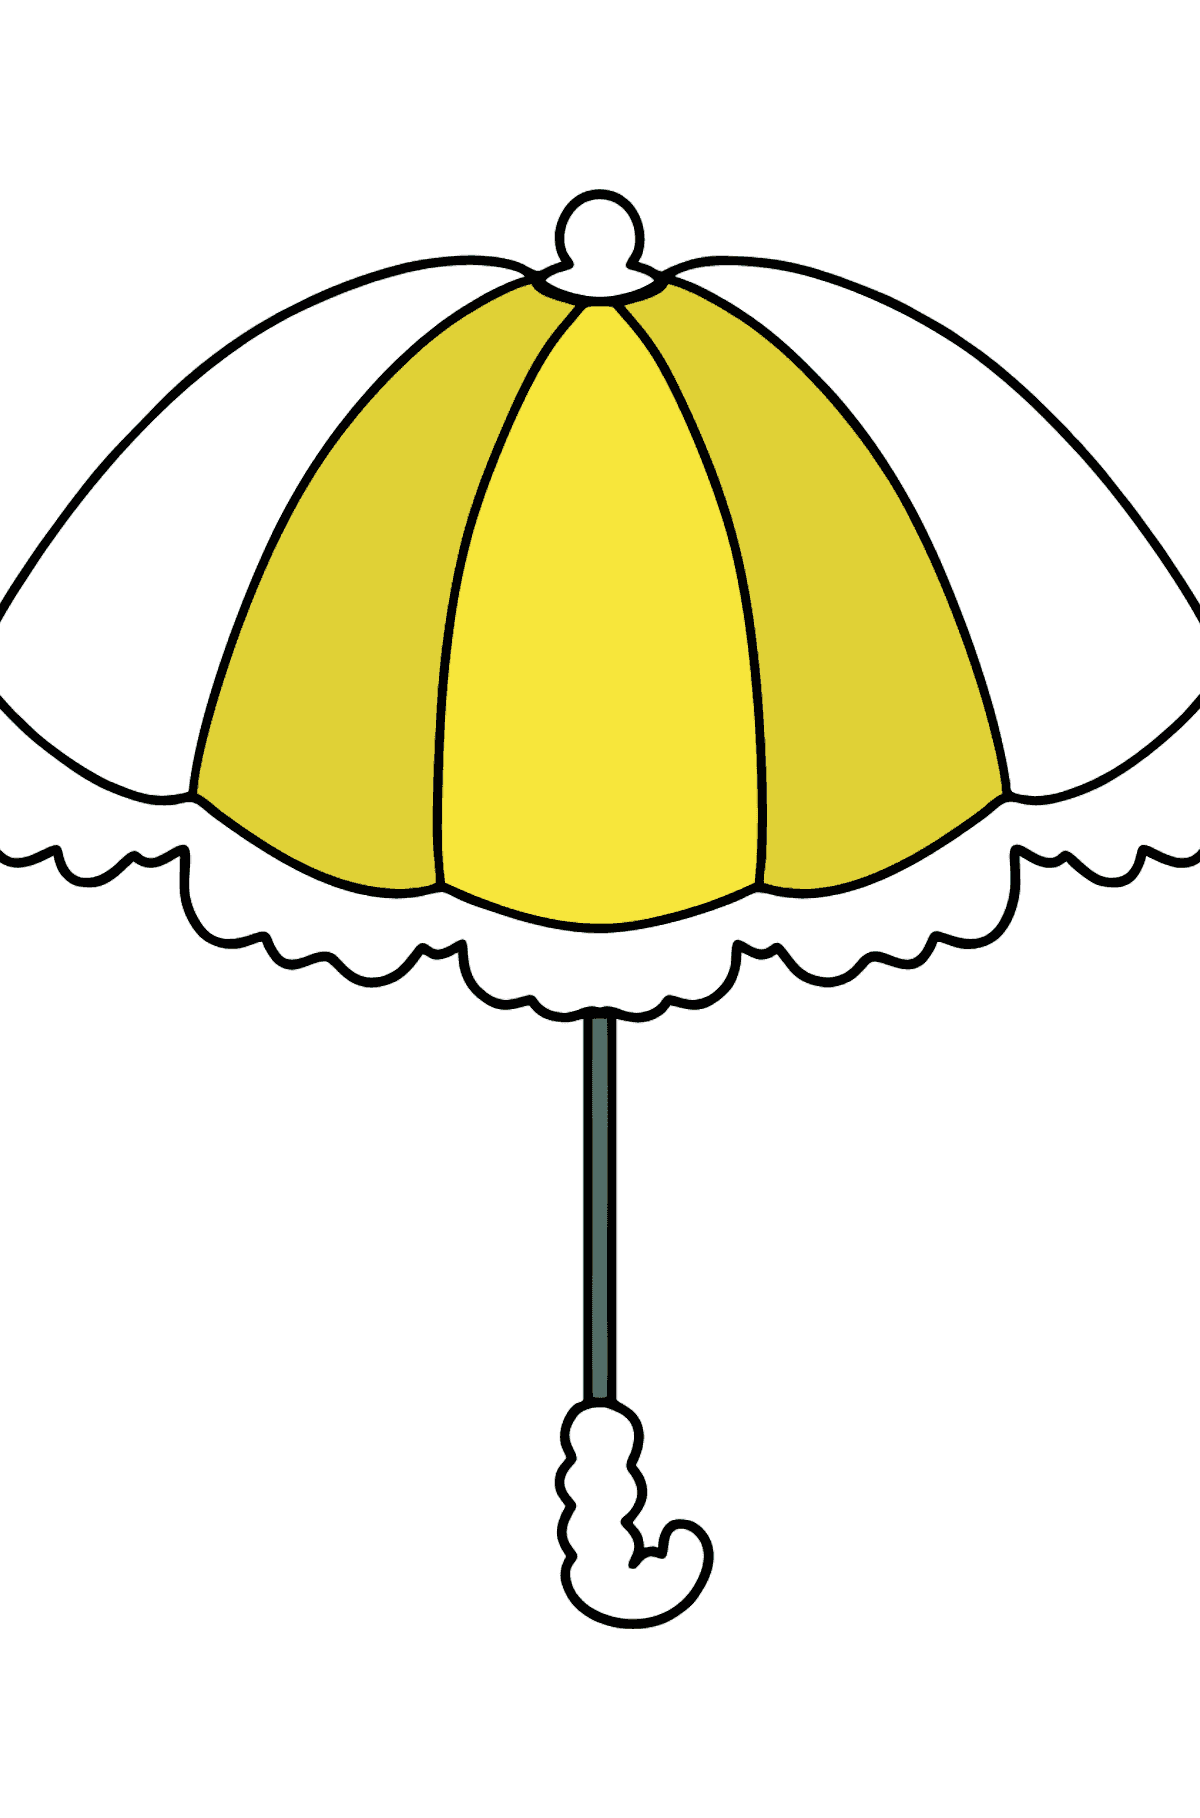 Раскраска зонтик для малышей - Картинки для Детей